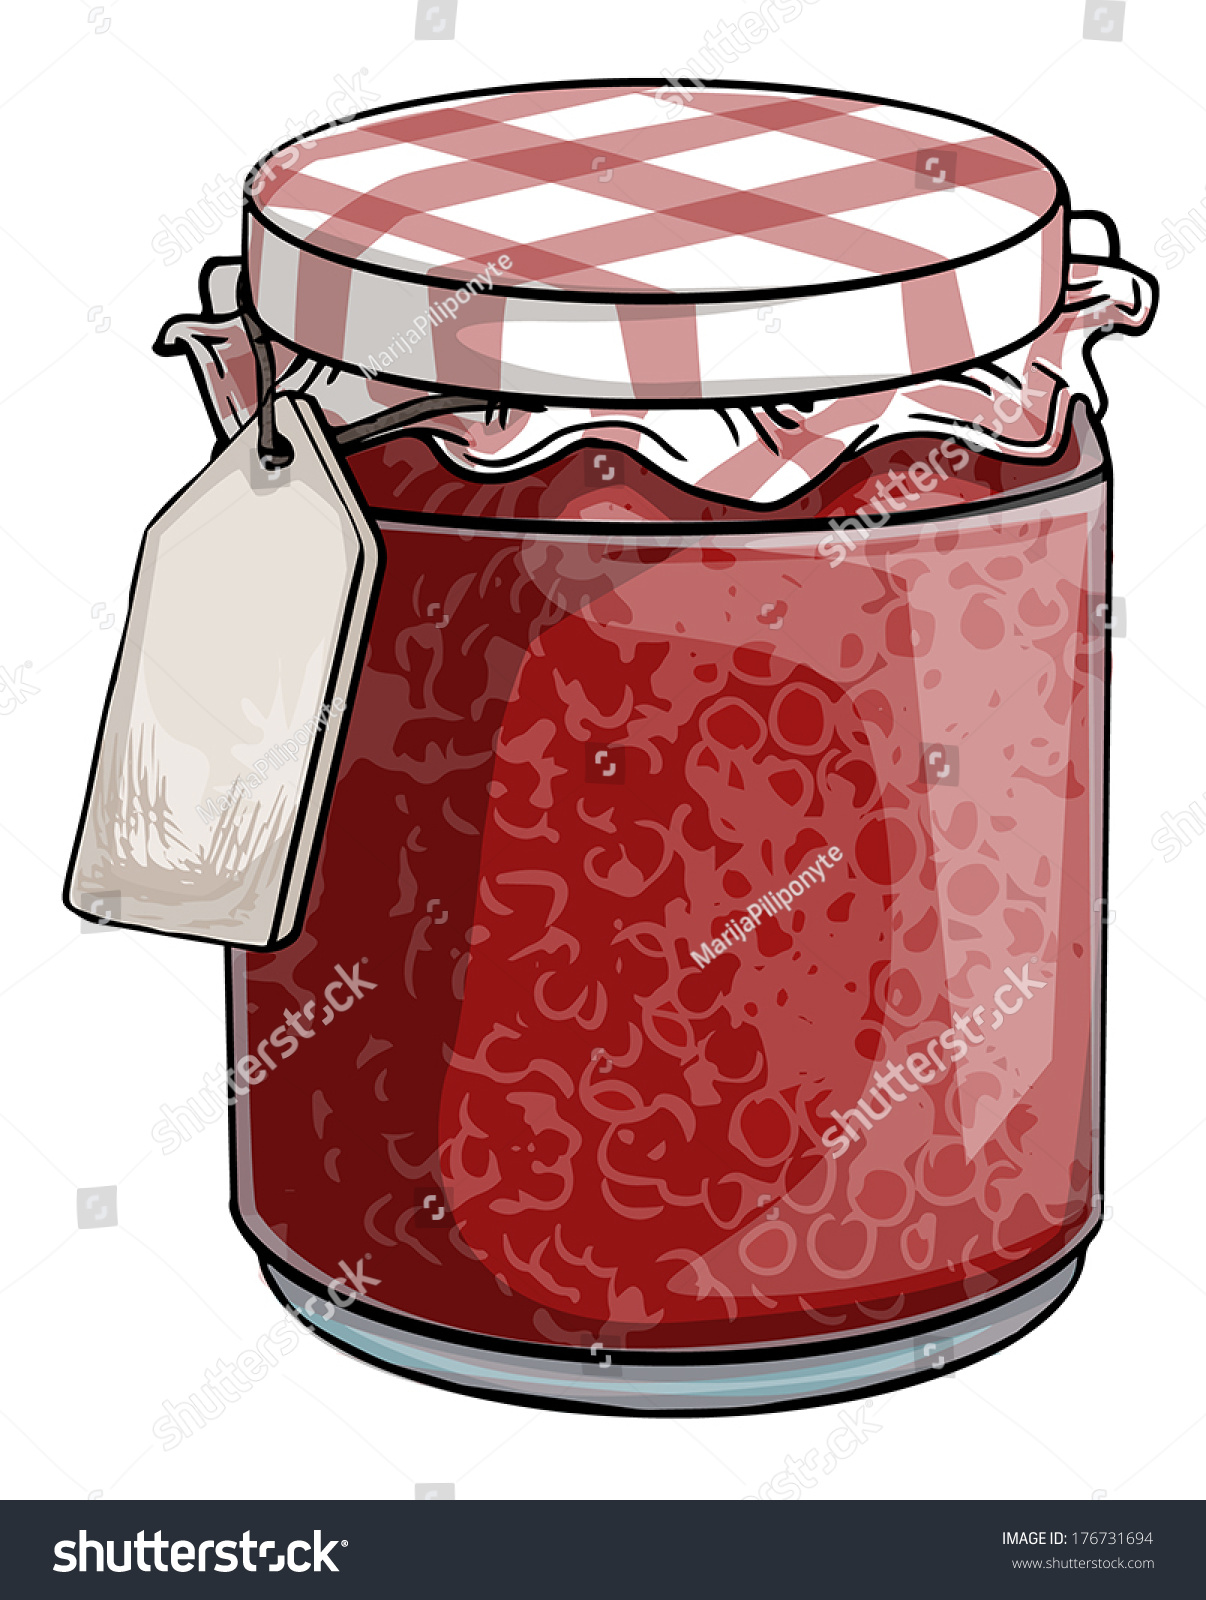 Red Jam Jar Vector Illustration Stock Vector 176731694 - Shutterstock